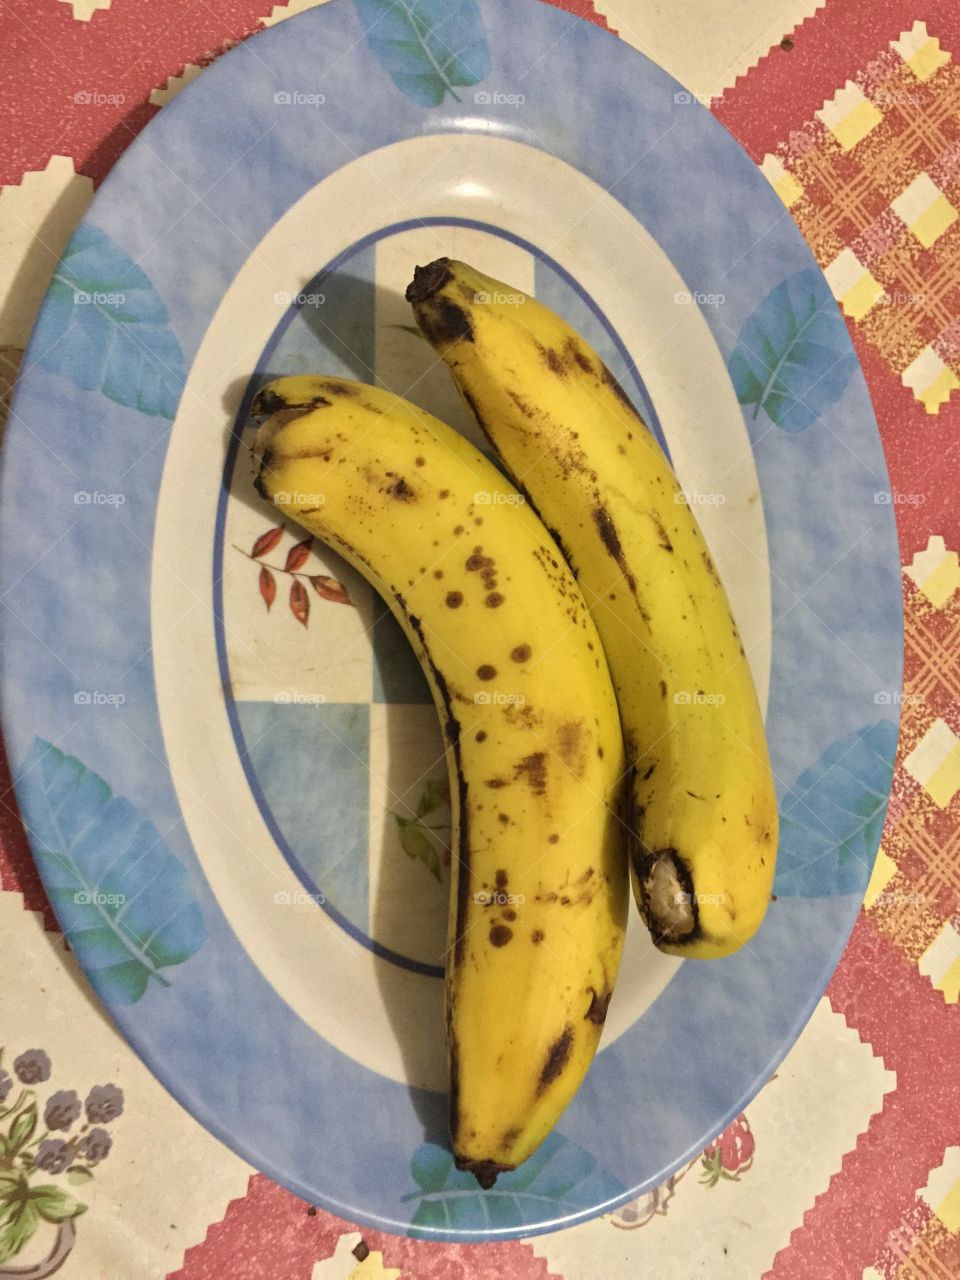 Two banana at morning